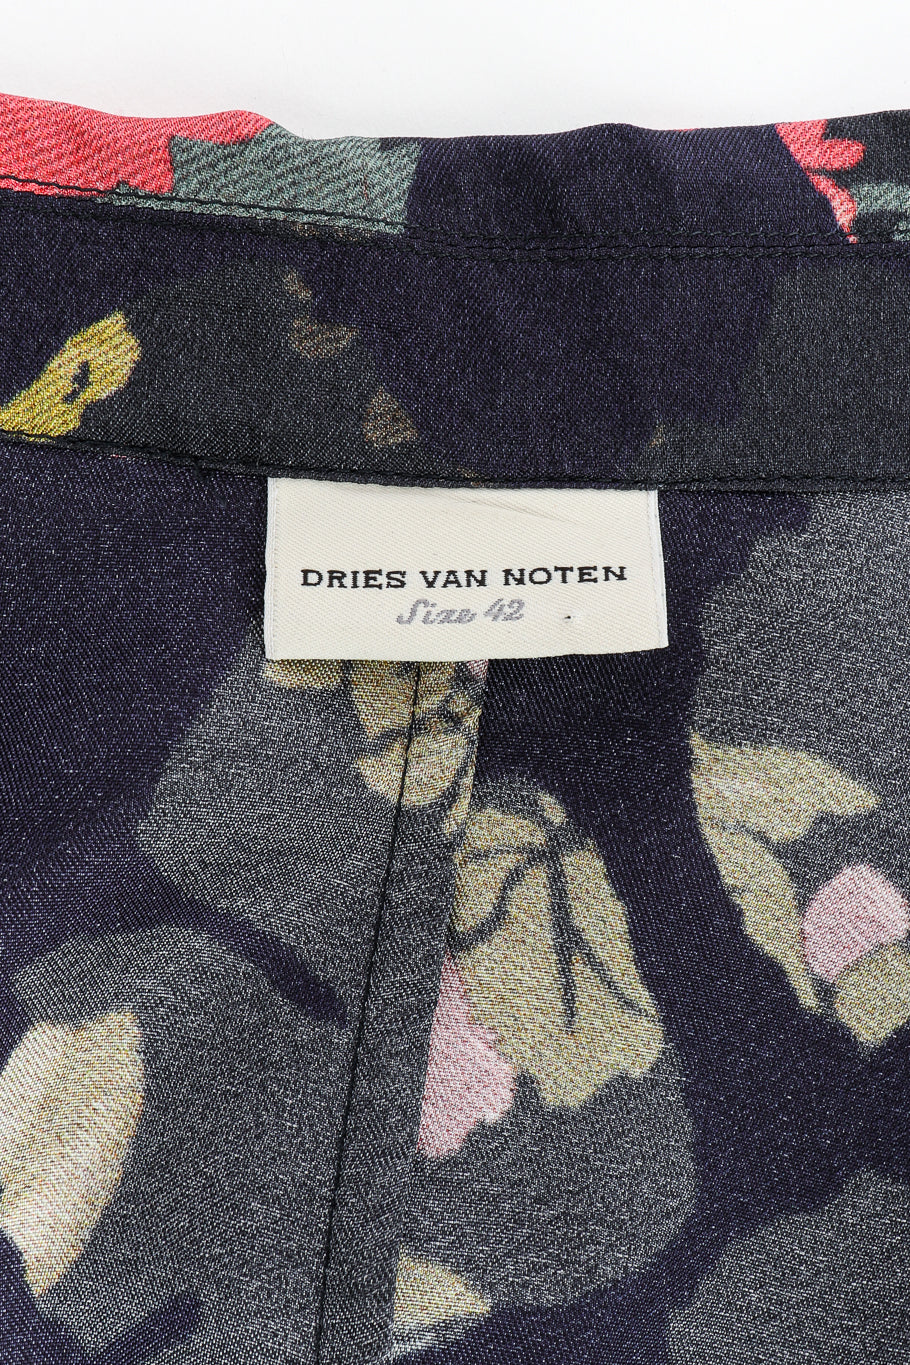 Blazer and pant set by Dries Van Noten on mannequin label @recessla